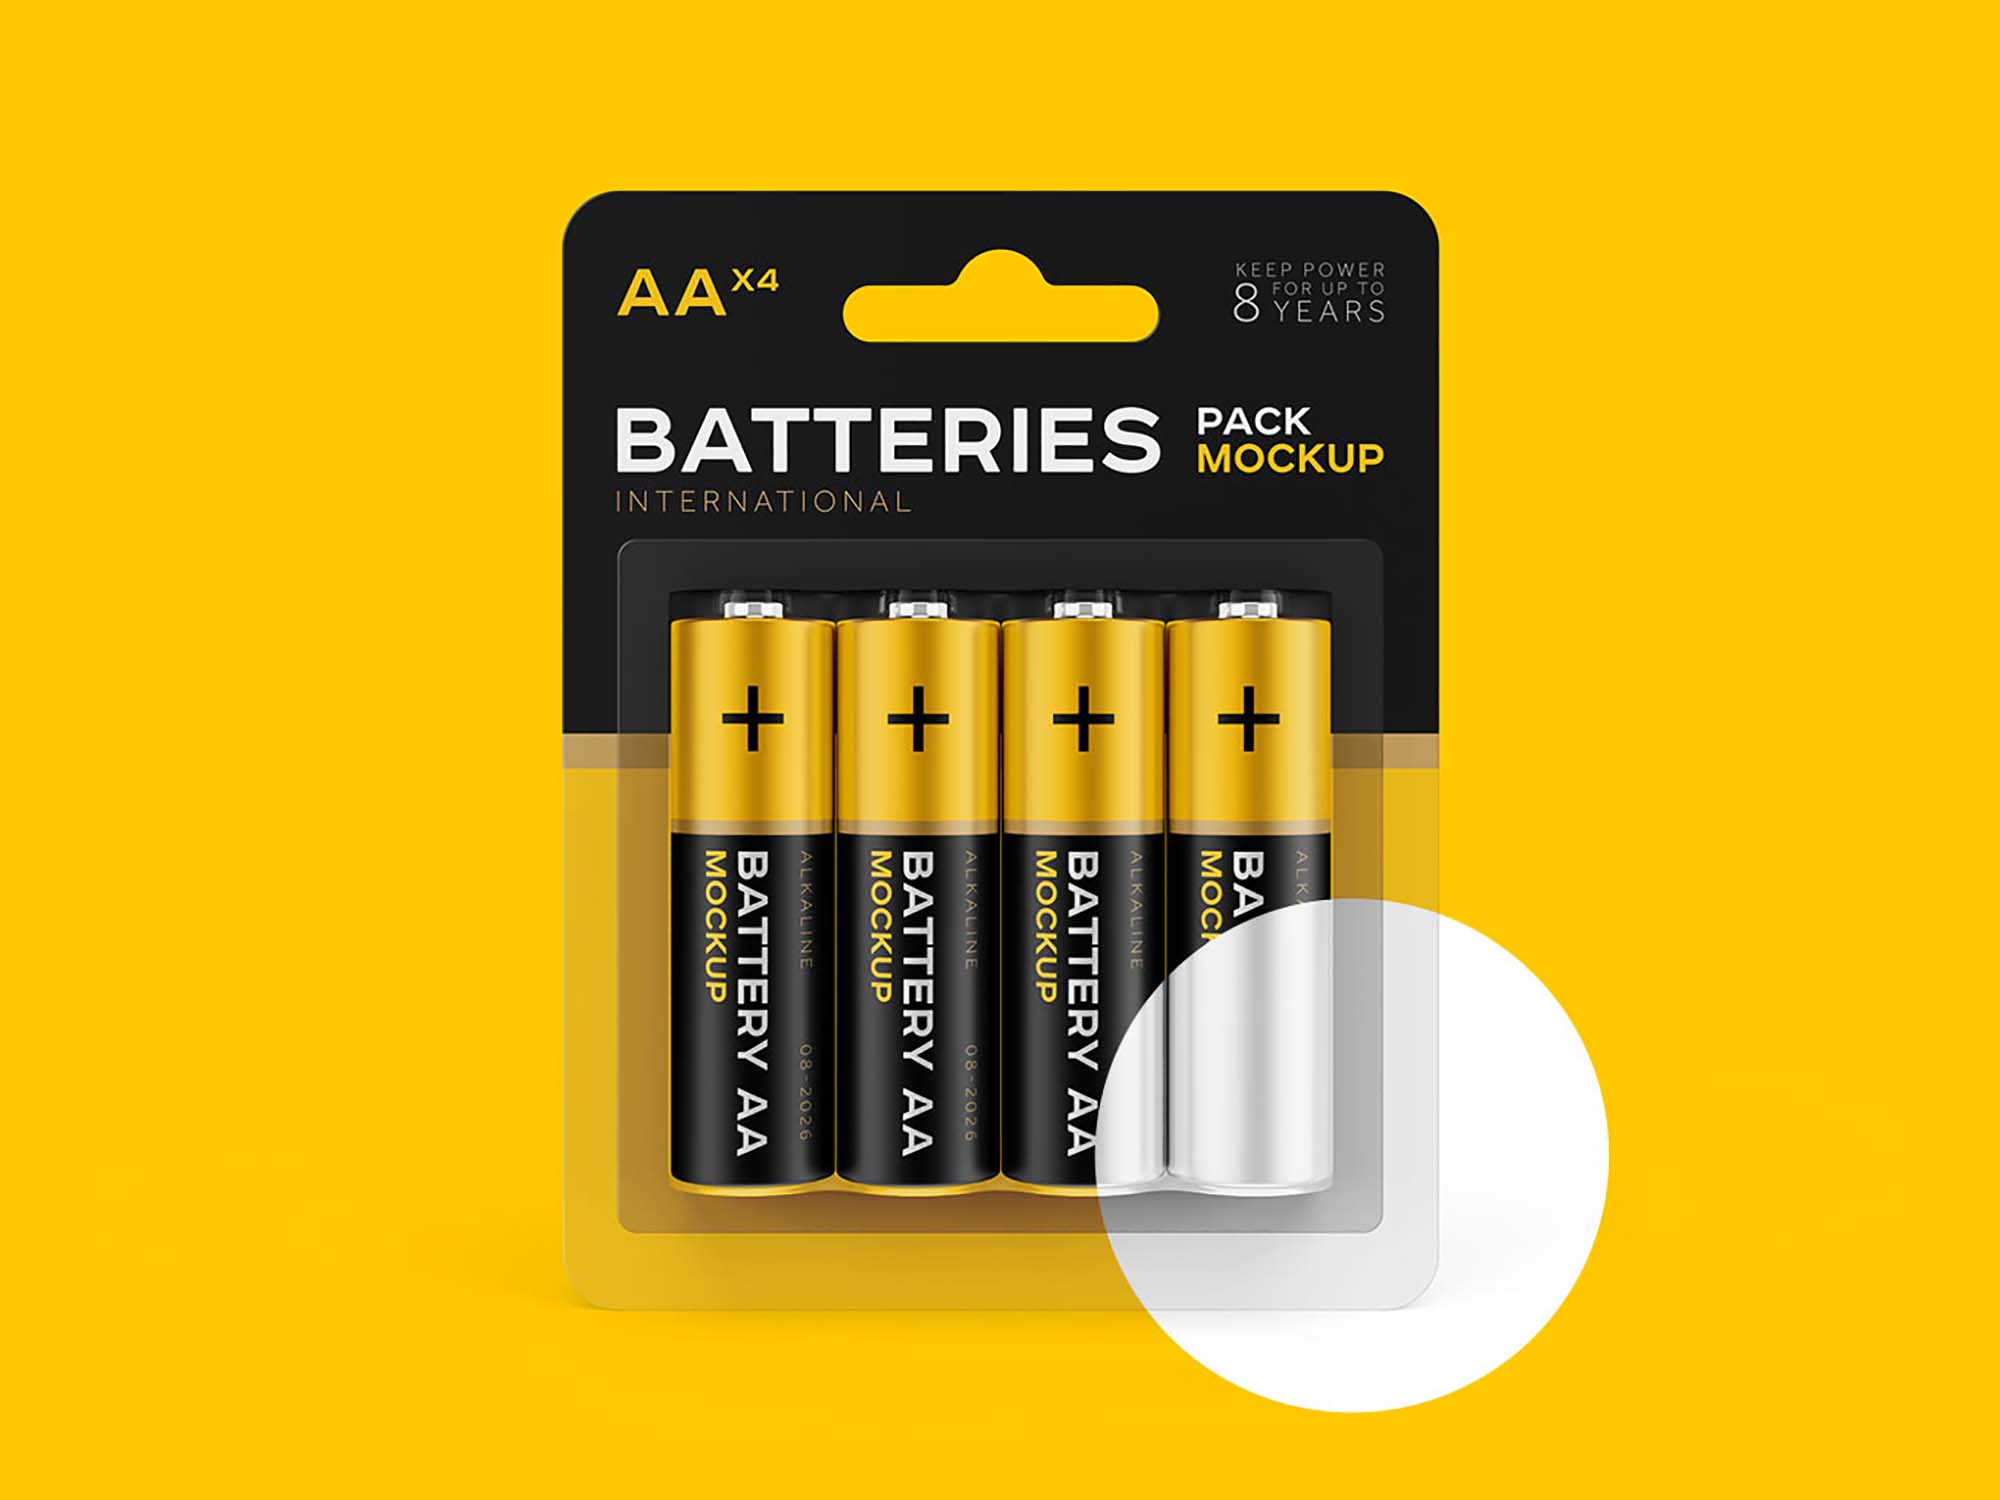 Maqueta de batería AA gratis